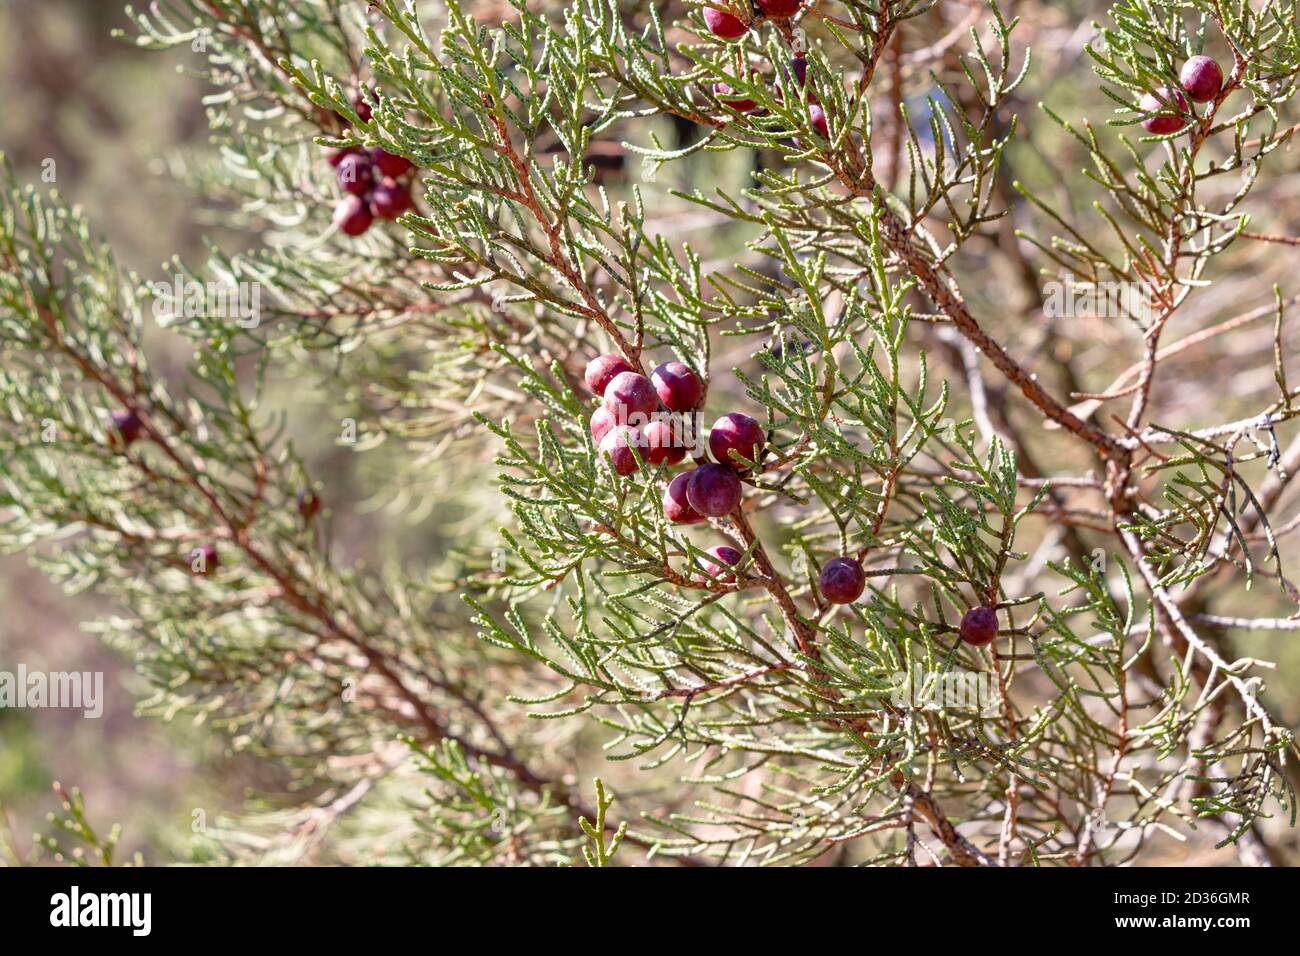 Juniperus phoenicea L, schwarzer Wacholder oder glatter Wacholder. Allgemein bekannt als phönizischer Wacholder, ist ein Strauch oder kleiner immergrüner Baum, mit skalierten Blättern a Stockfoto